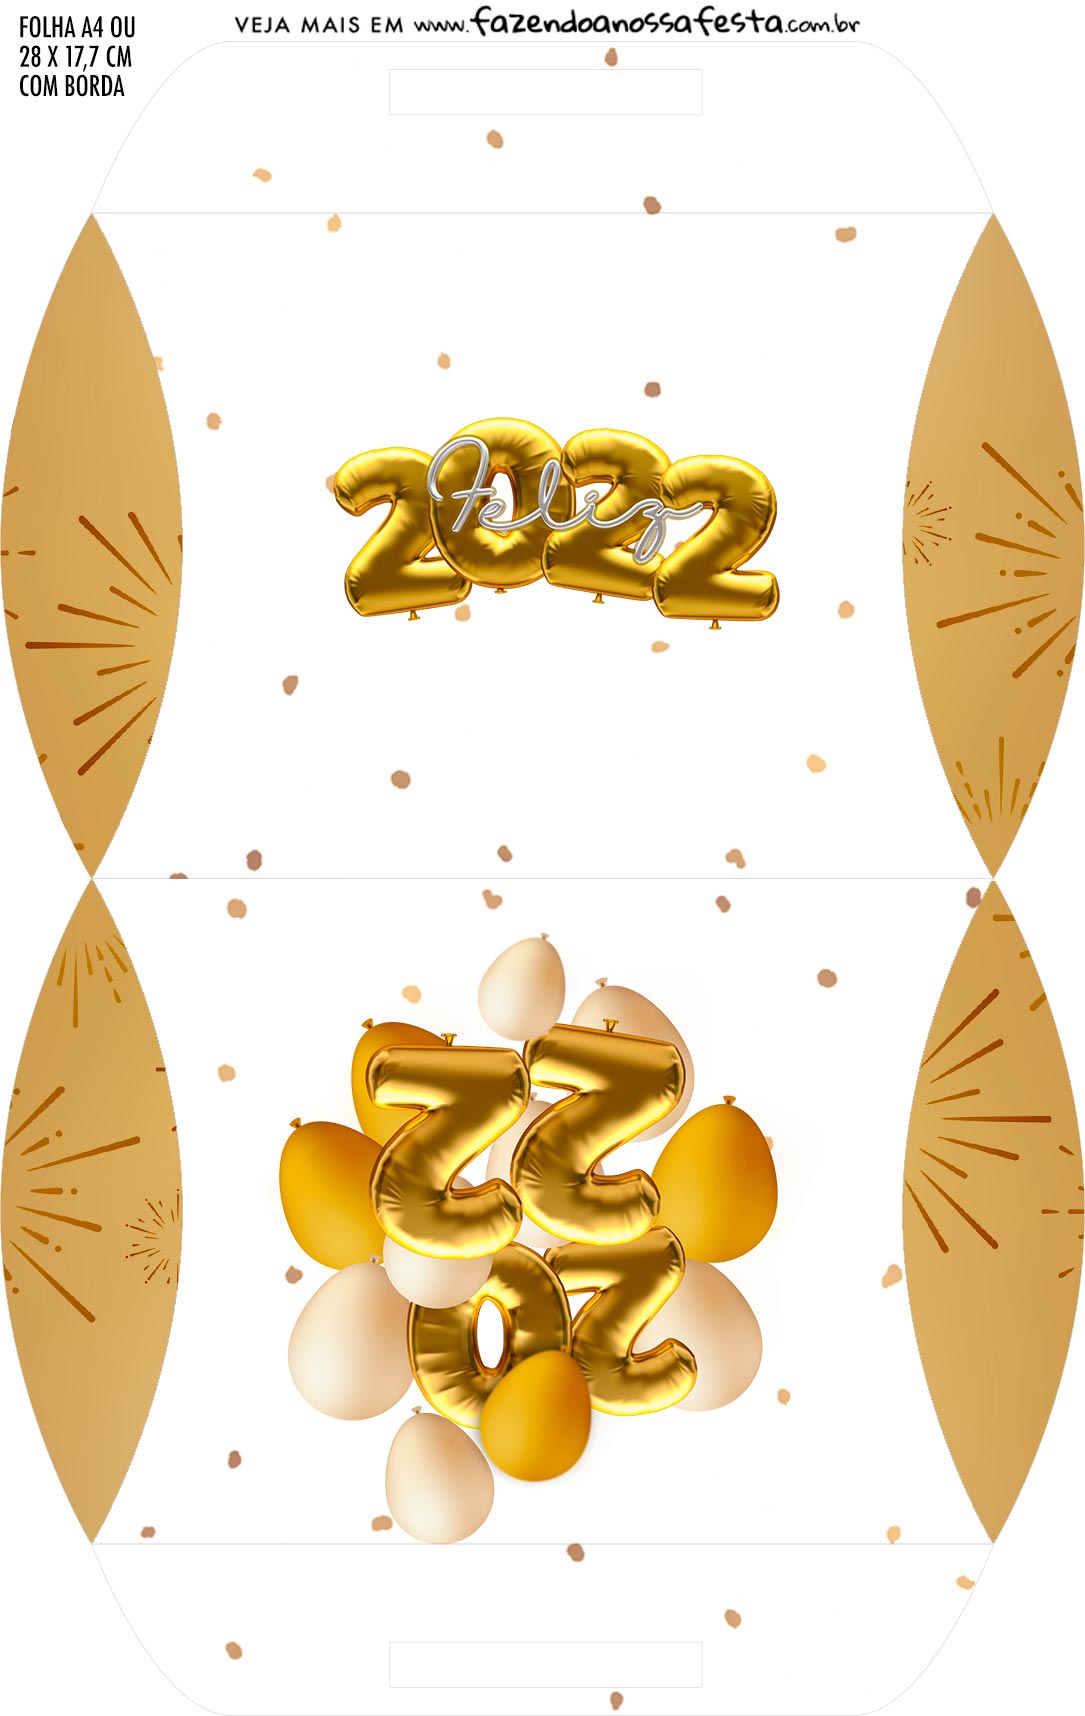 Caixa Almofada bolsinha Ano Novo 2022